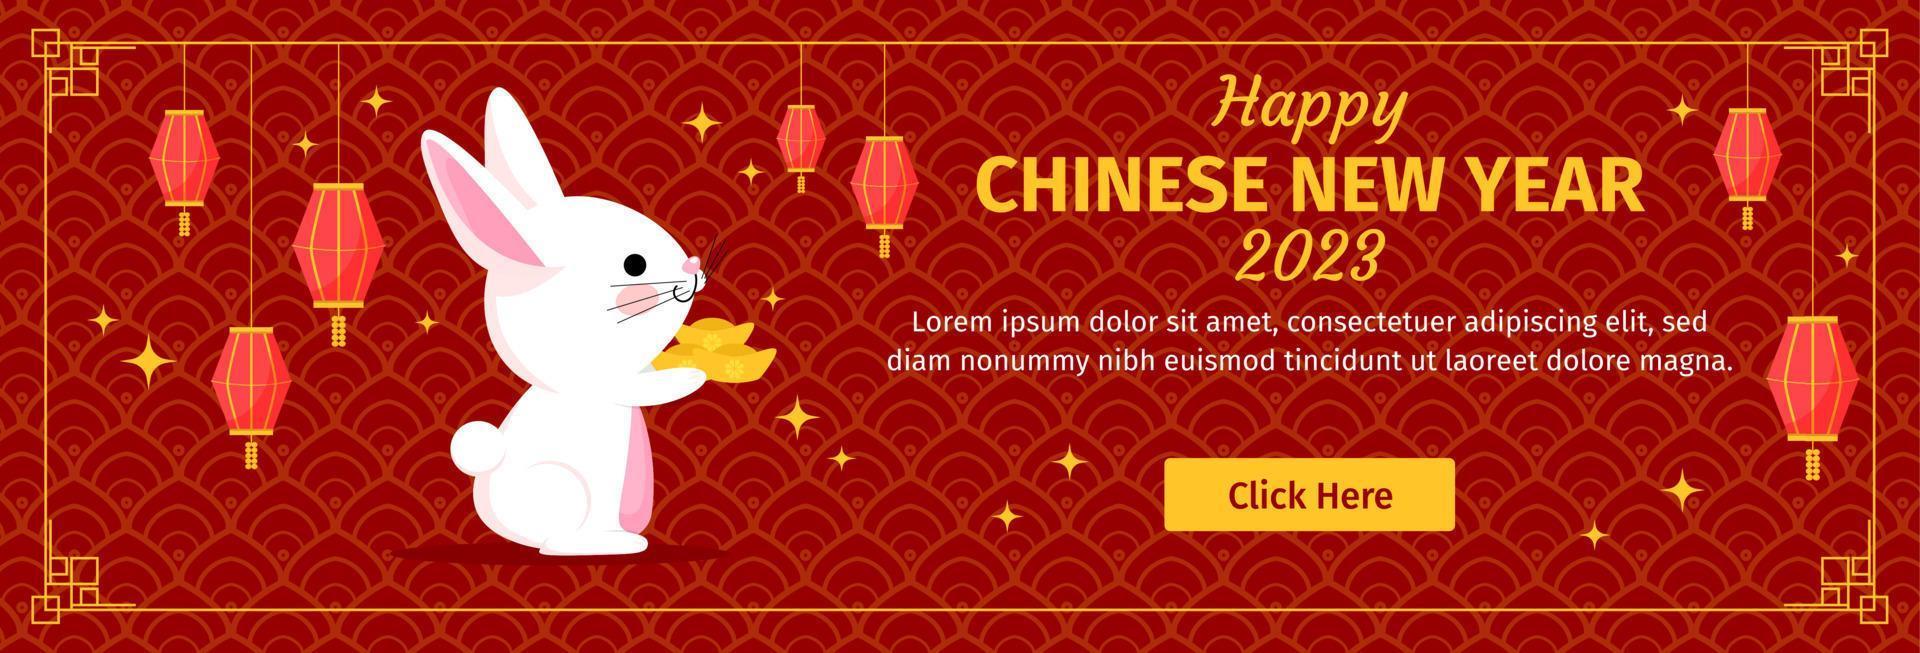 feliz año nuevo chino 2023 conejo vector banner horizontal diseño plano